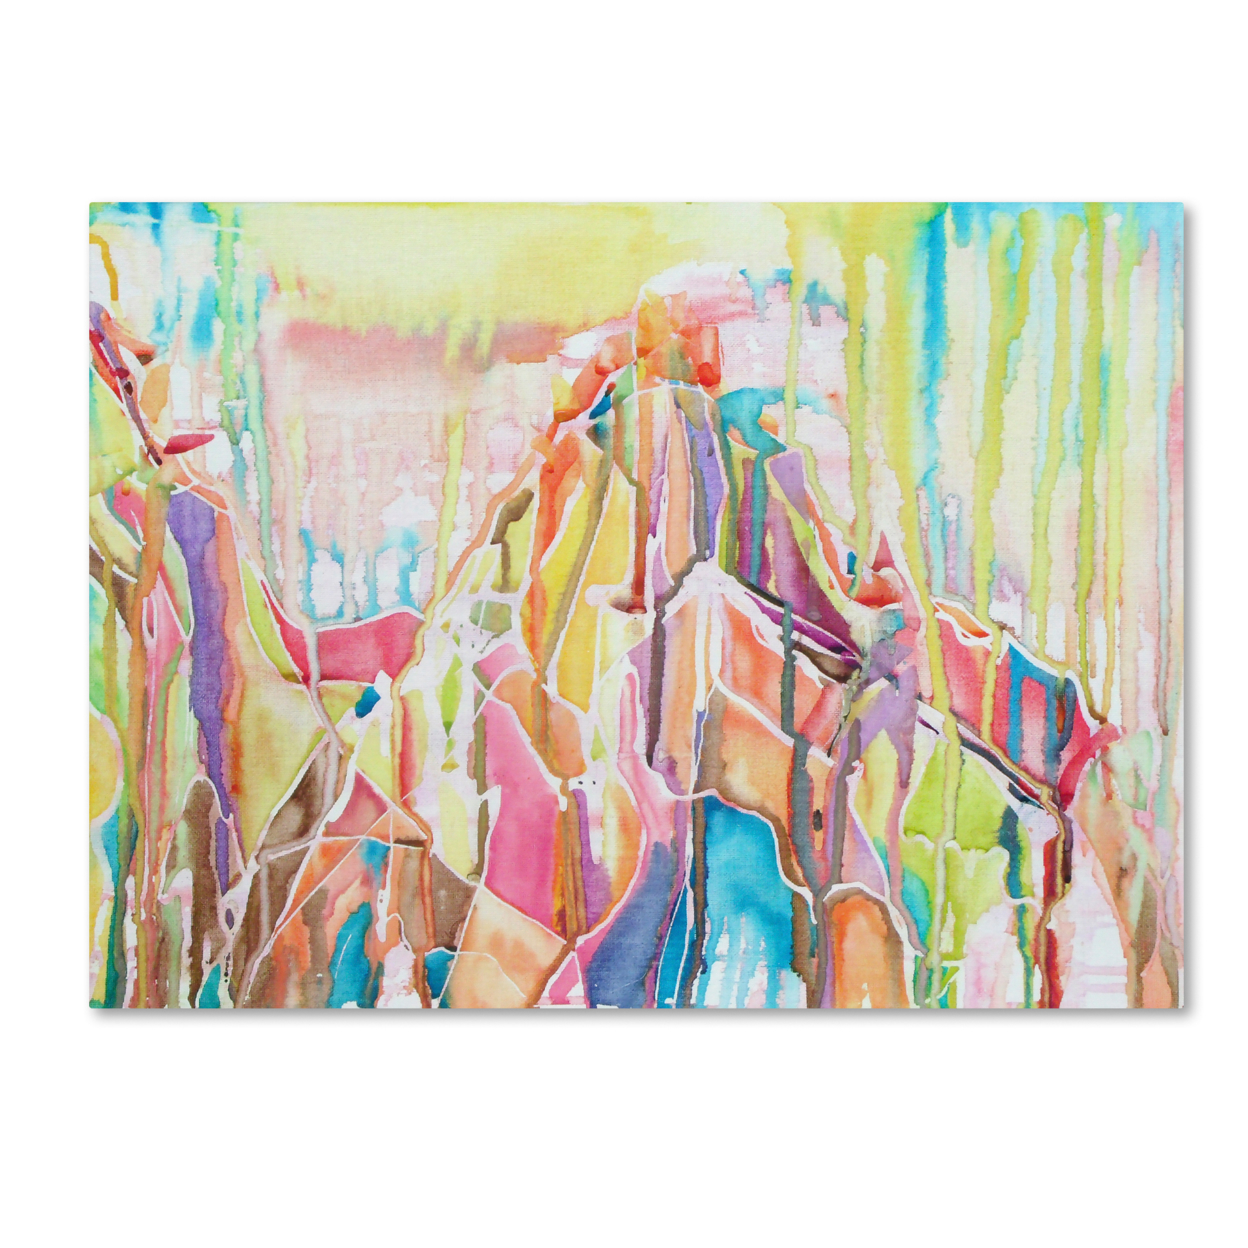 Lauren Moss 'Sedona' Canvas Wall Art 35 X 47 Inches